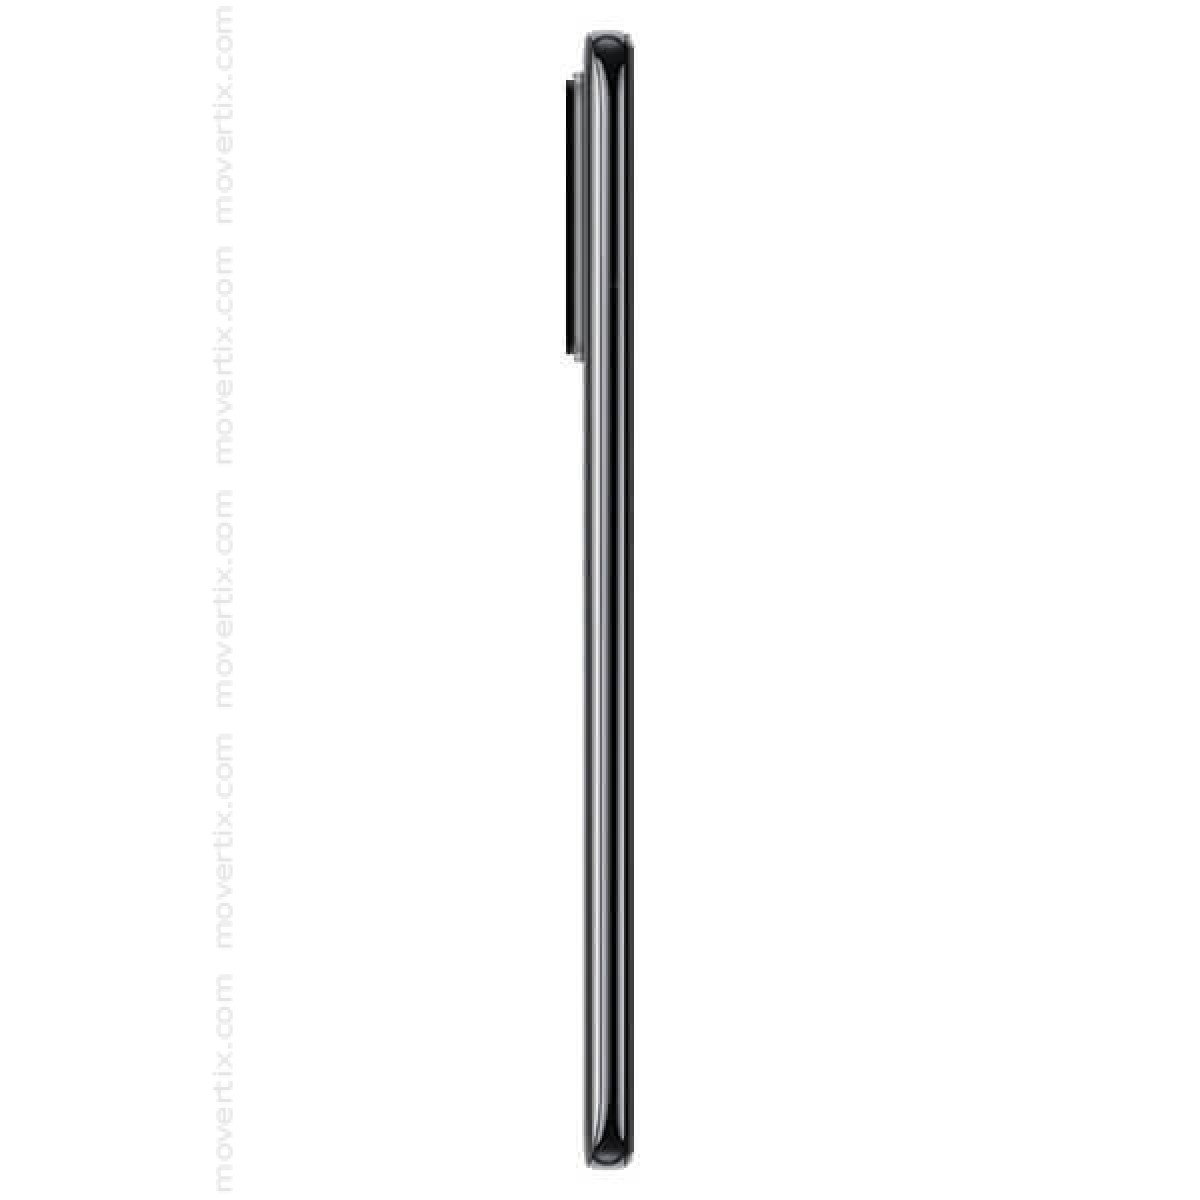 Xiaomi Redmi Note 10 Pro Dual SIM Onyx Grey 128GB and 6GB RAM 